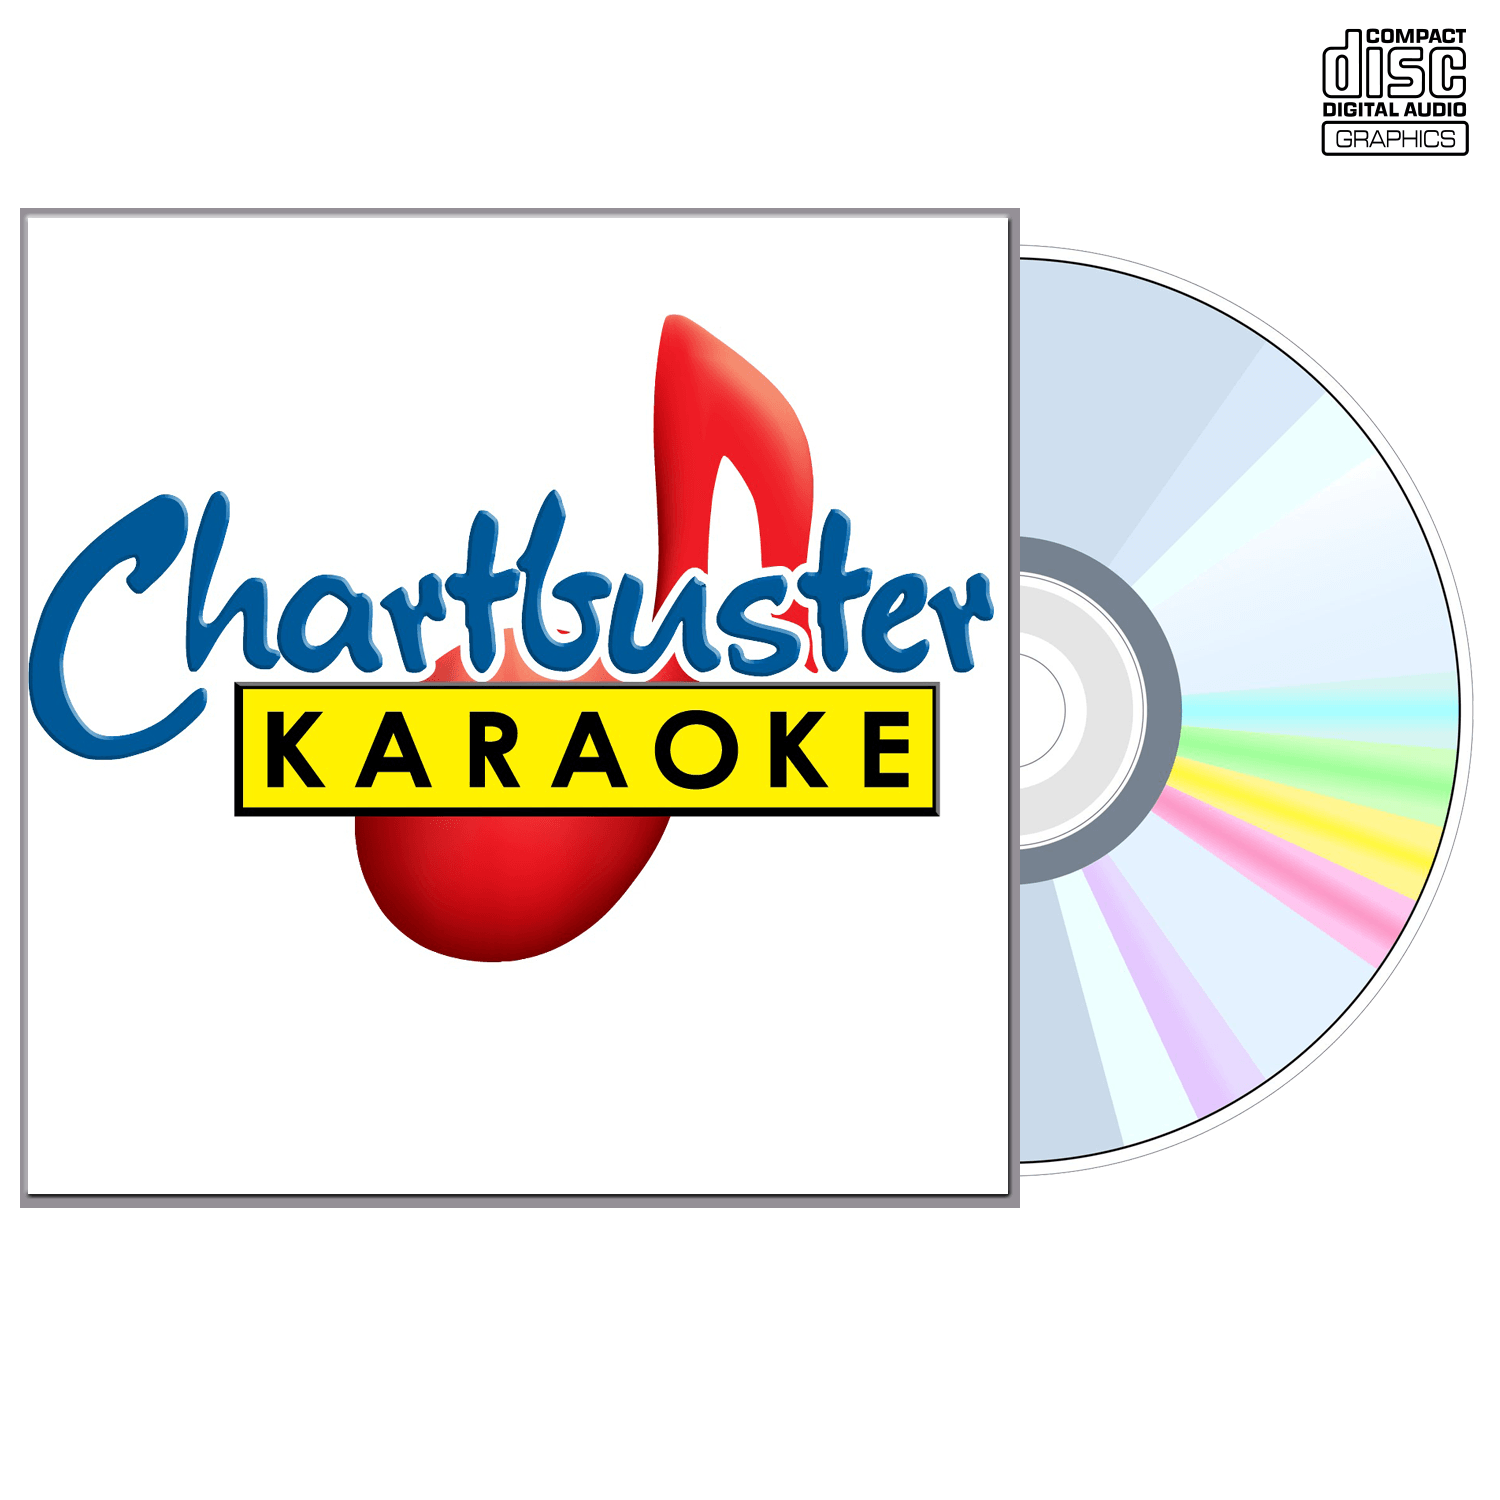 Craig Morgan - CD+G - Chartbuster Karaoke - Karaoke Home Entertainment